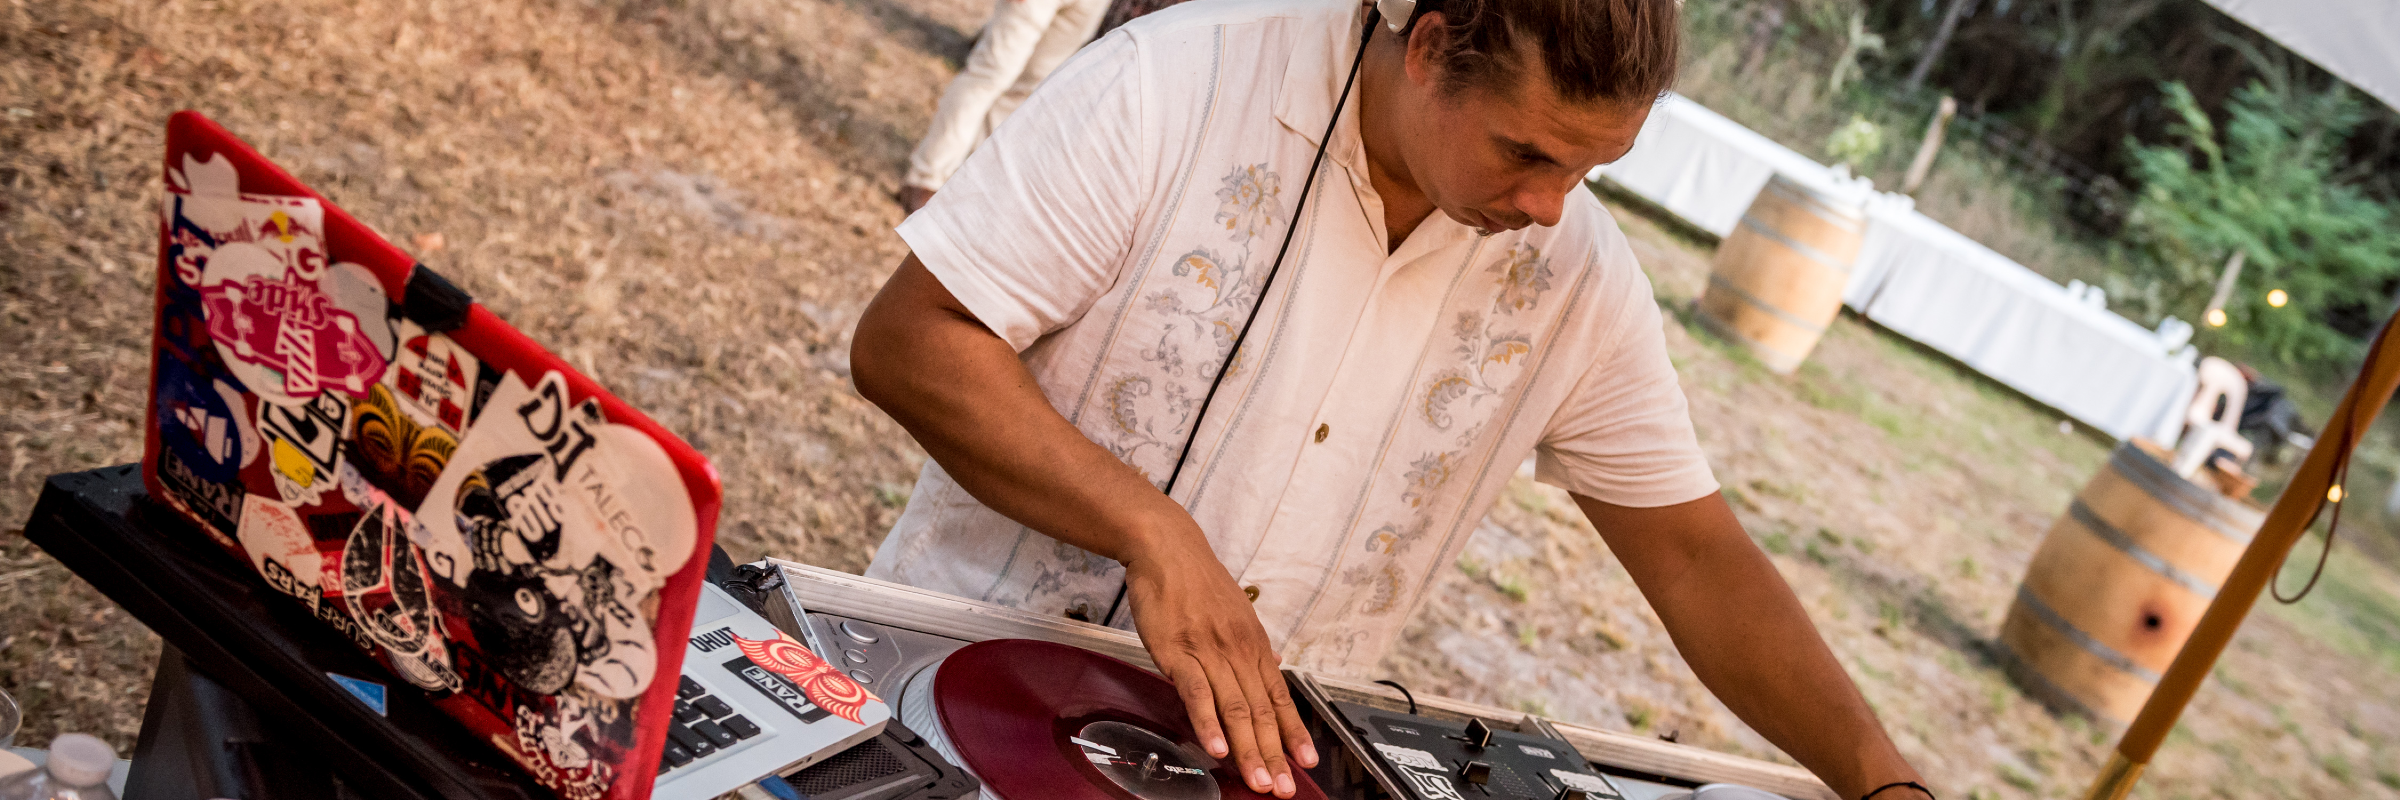 Dj Taléco, DJ DJ en représentation à Landes - photo de couverture n° 3